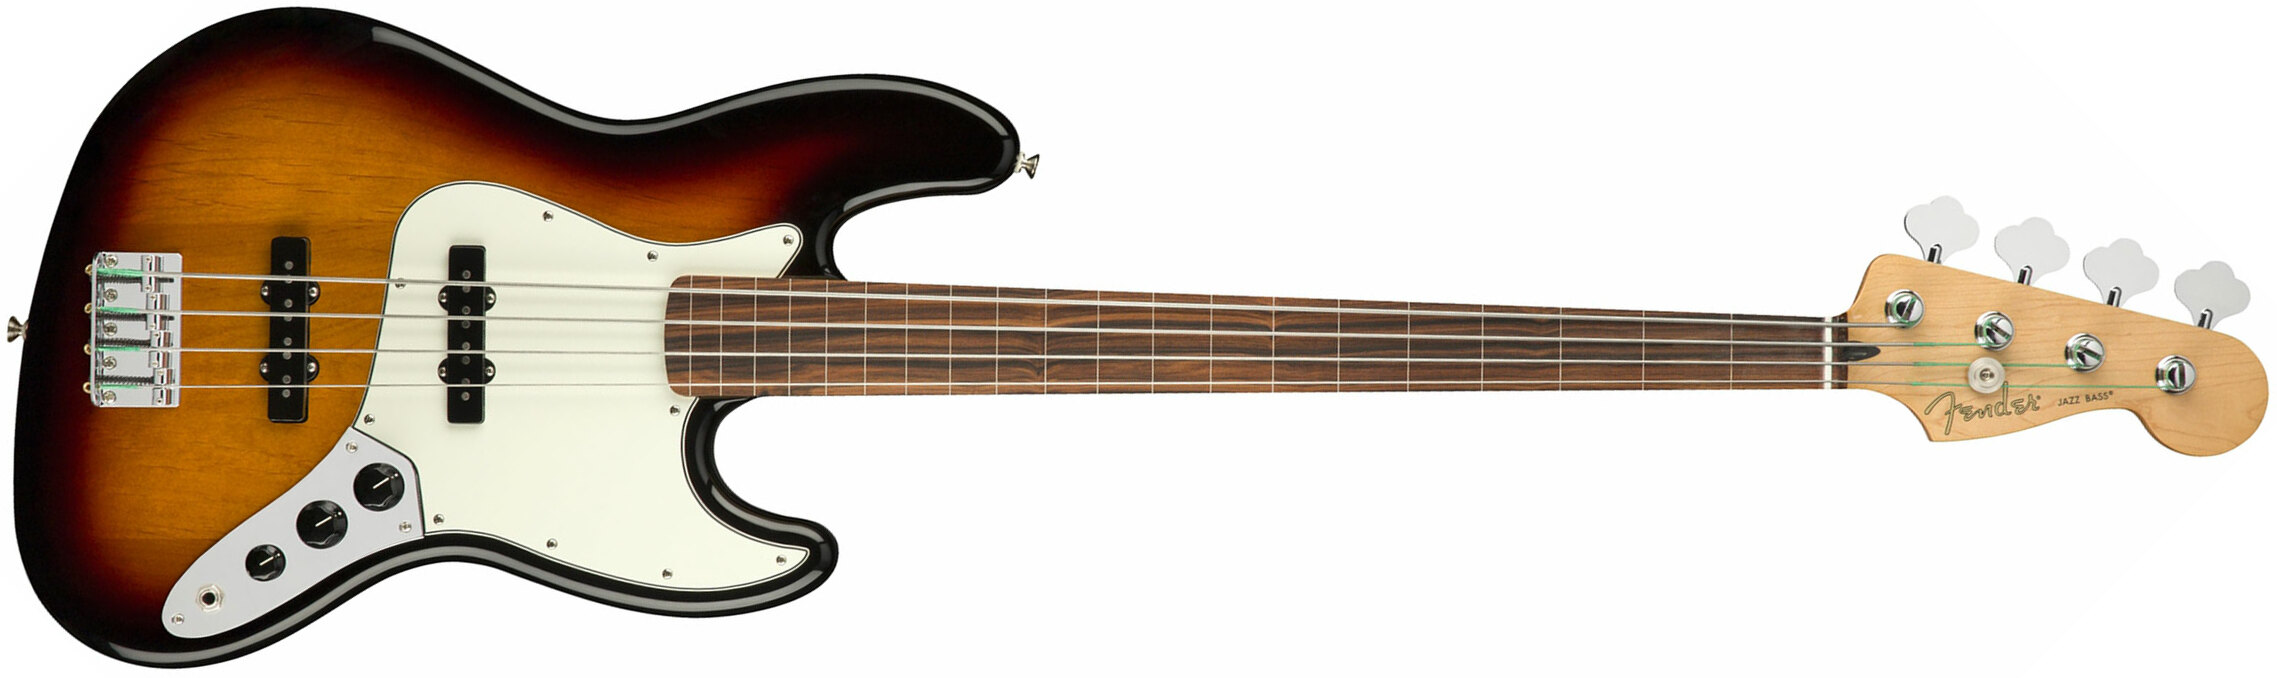 Fender Jazz Bass Player Fretless Mex Pf - 3-color Sunburst - Bajo eléctrico de cuerpo sólido - Main picture